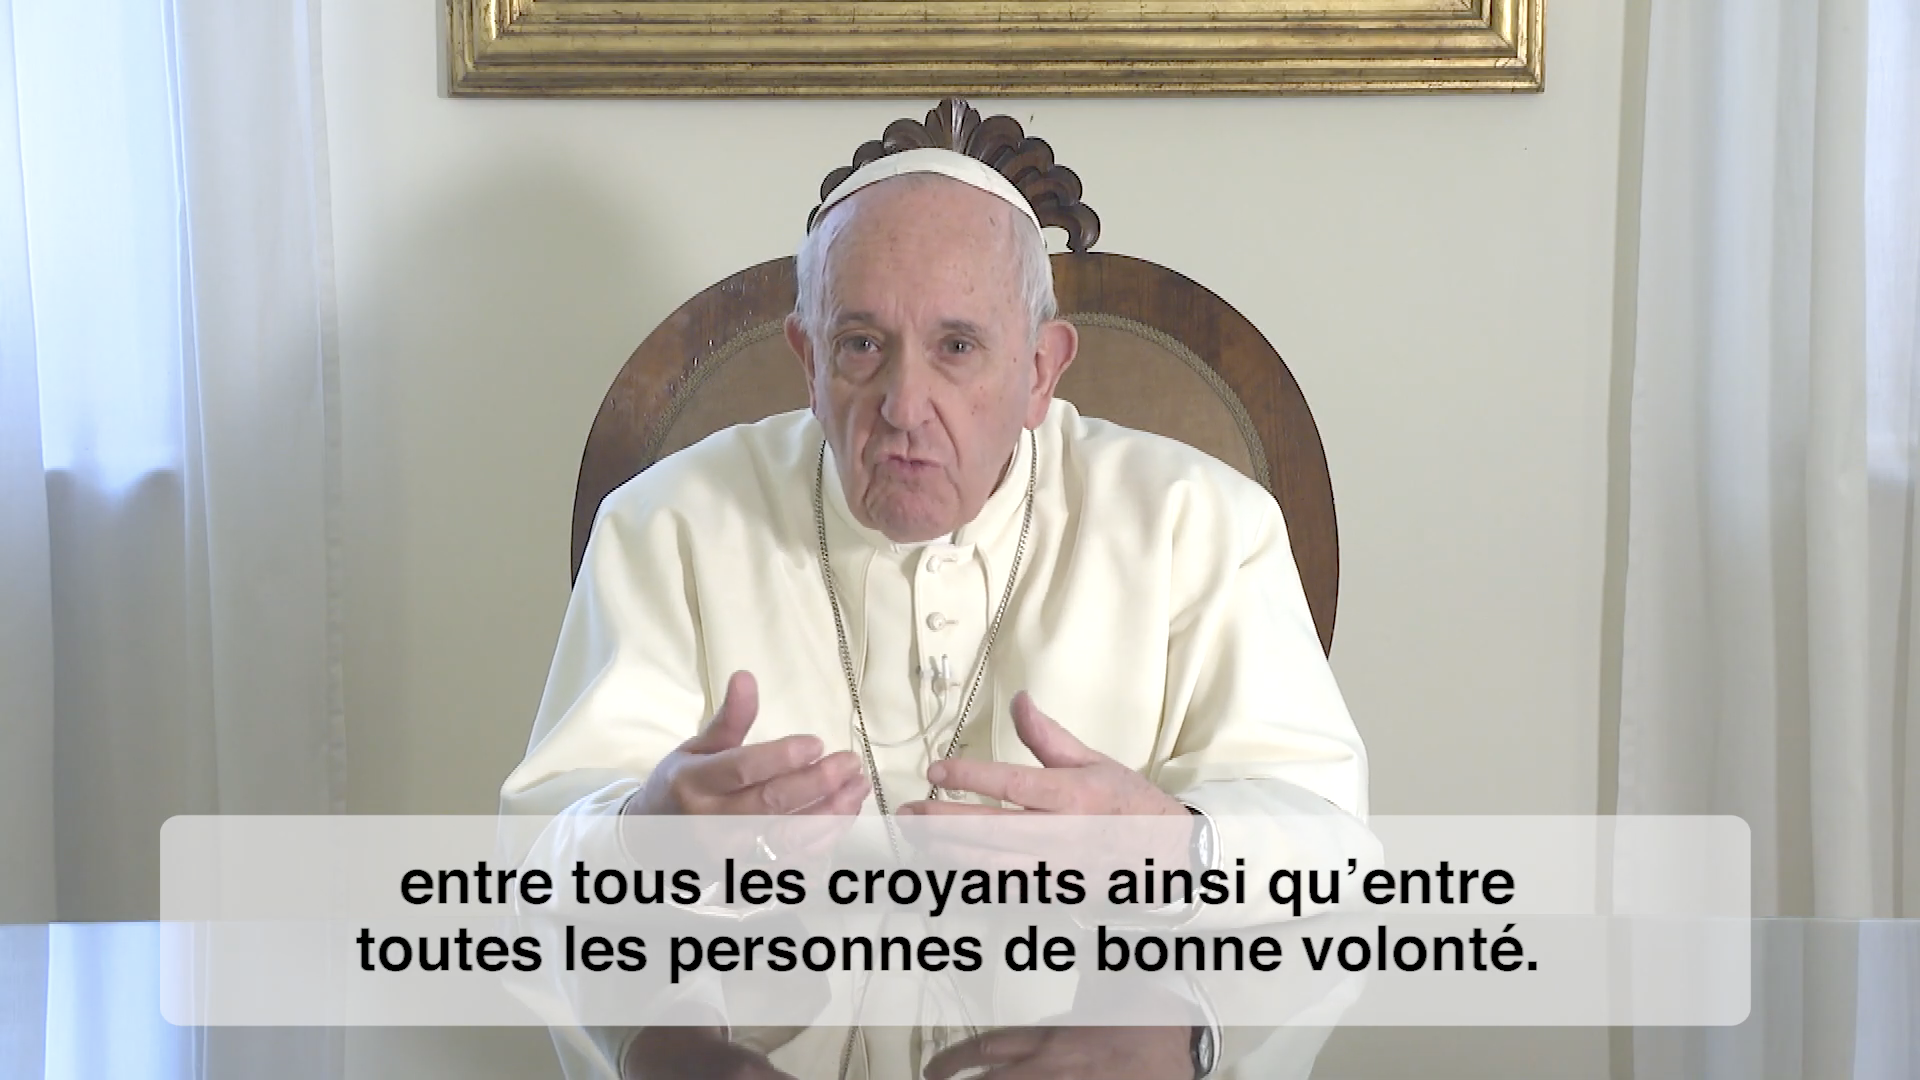 La Vidéo du Pape, janvier 2020, capture